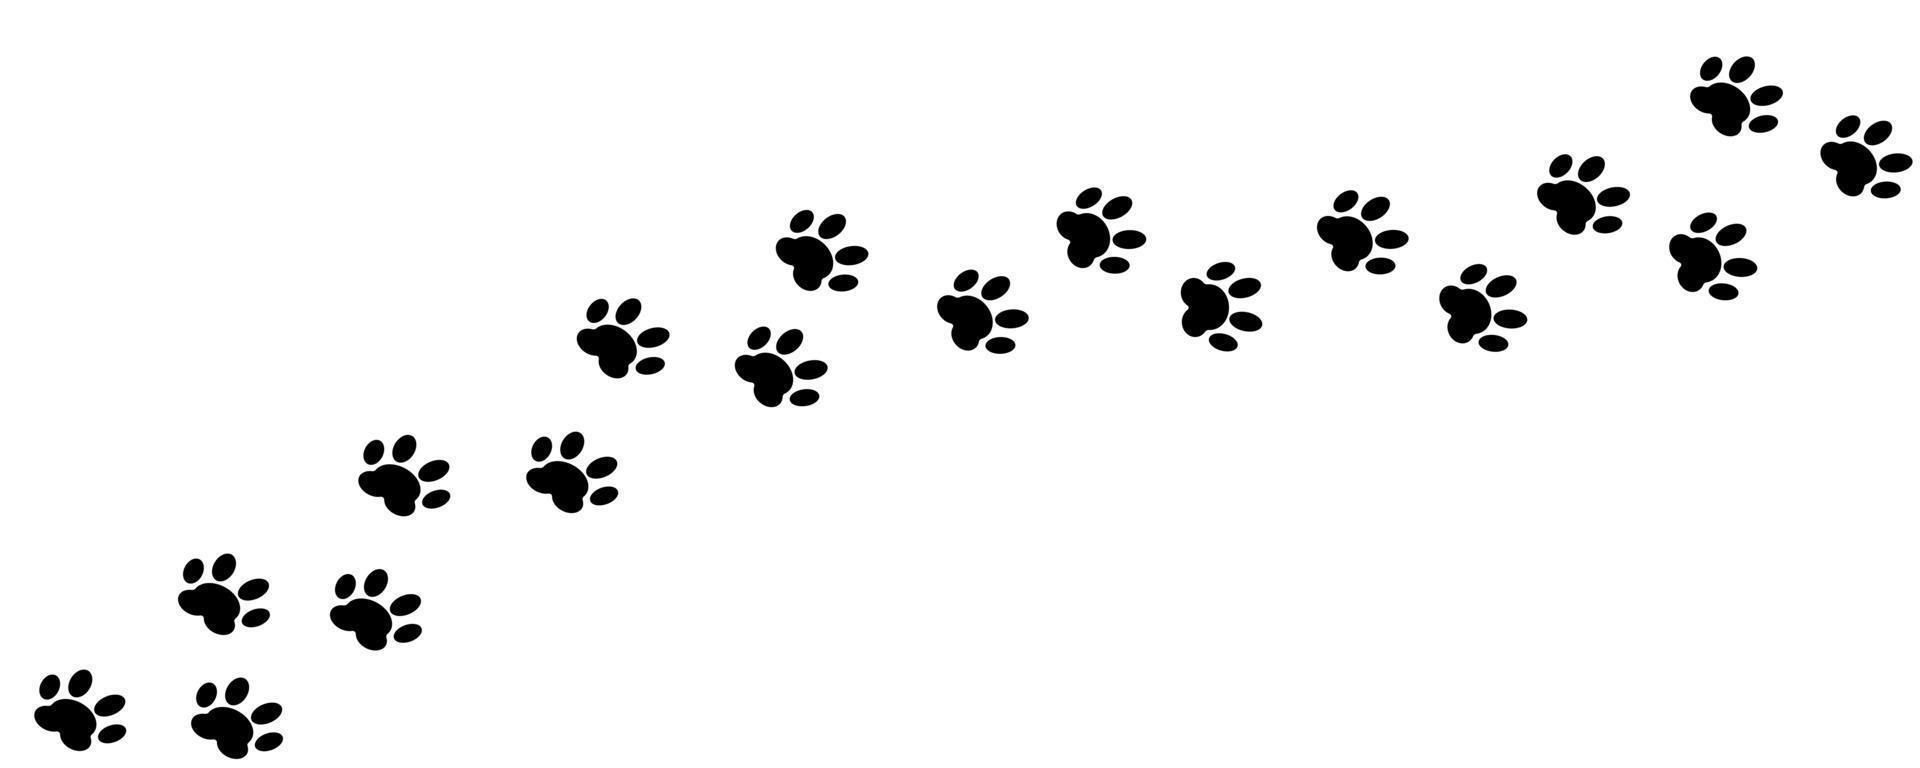 poot vector voetafdruk kat, hond voetafdruk. diagonale sporen van dierensilhouet voor t-shirts, achtergronden, patronen, websites, showcaseontwerpen, wenskaarten, kinderprints, enz.